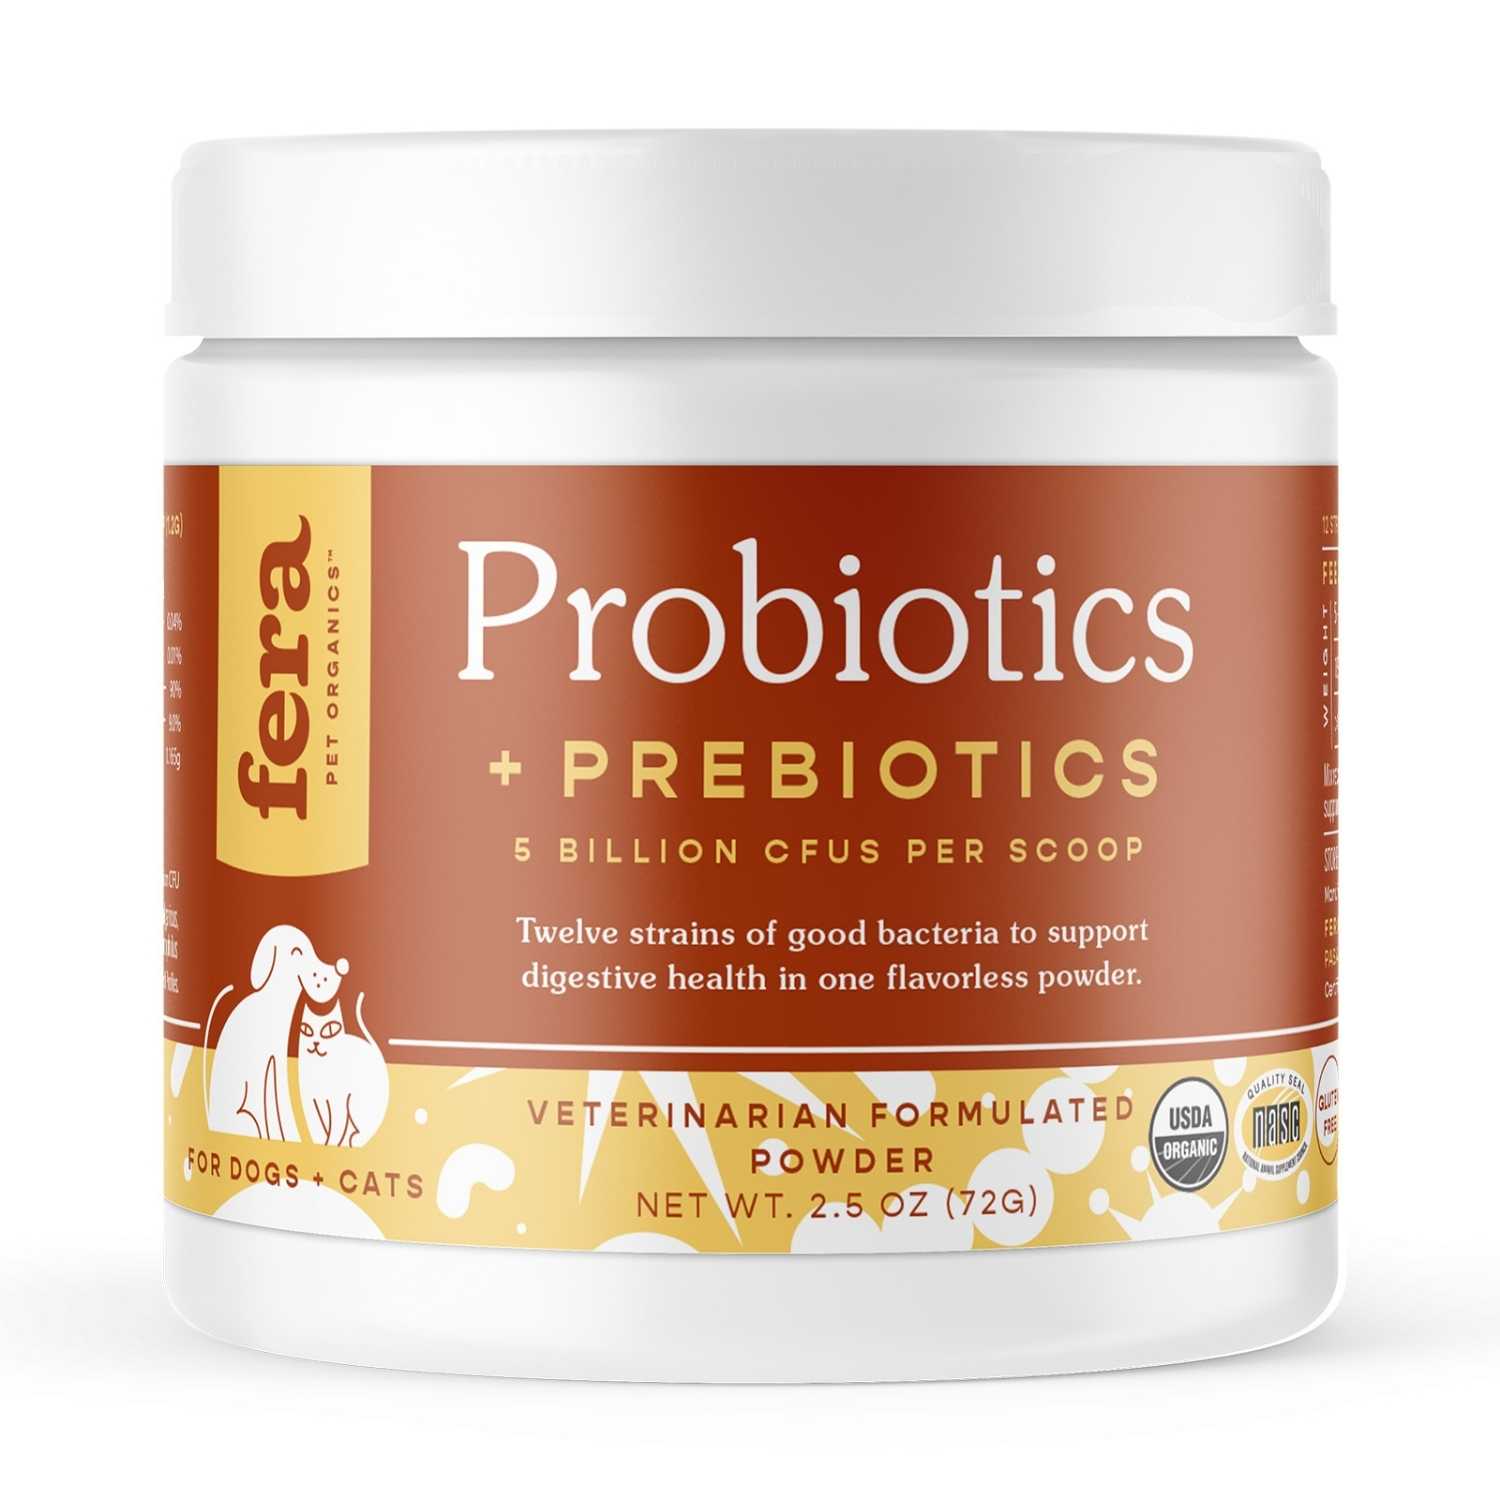 Fera Pet Organics - Organic Probiotics with Prebiotics (60 servings, powder) for Dogs & Cats 2.5oz